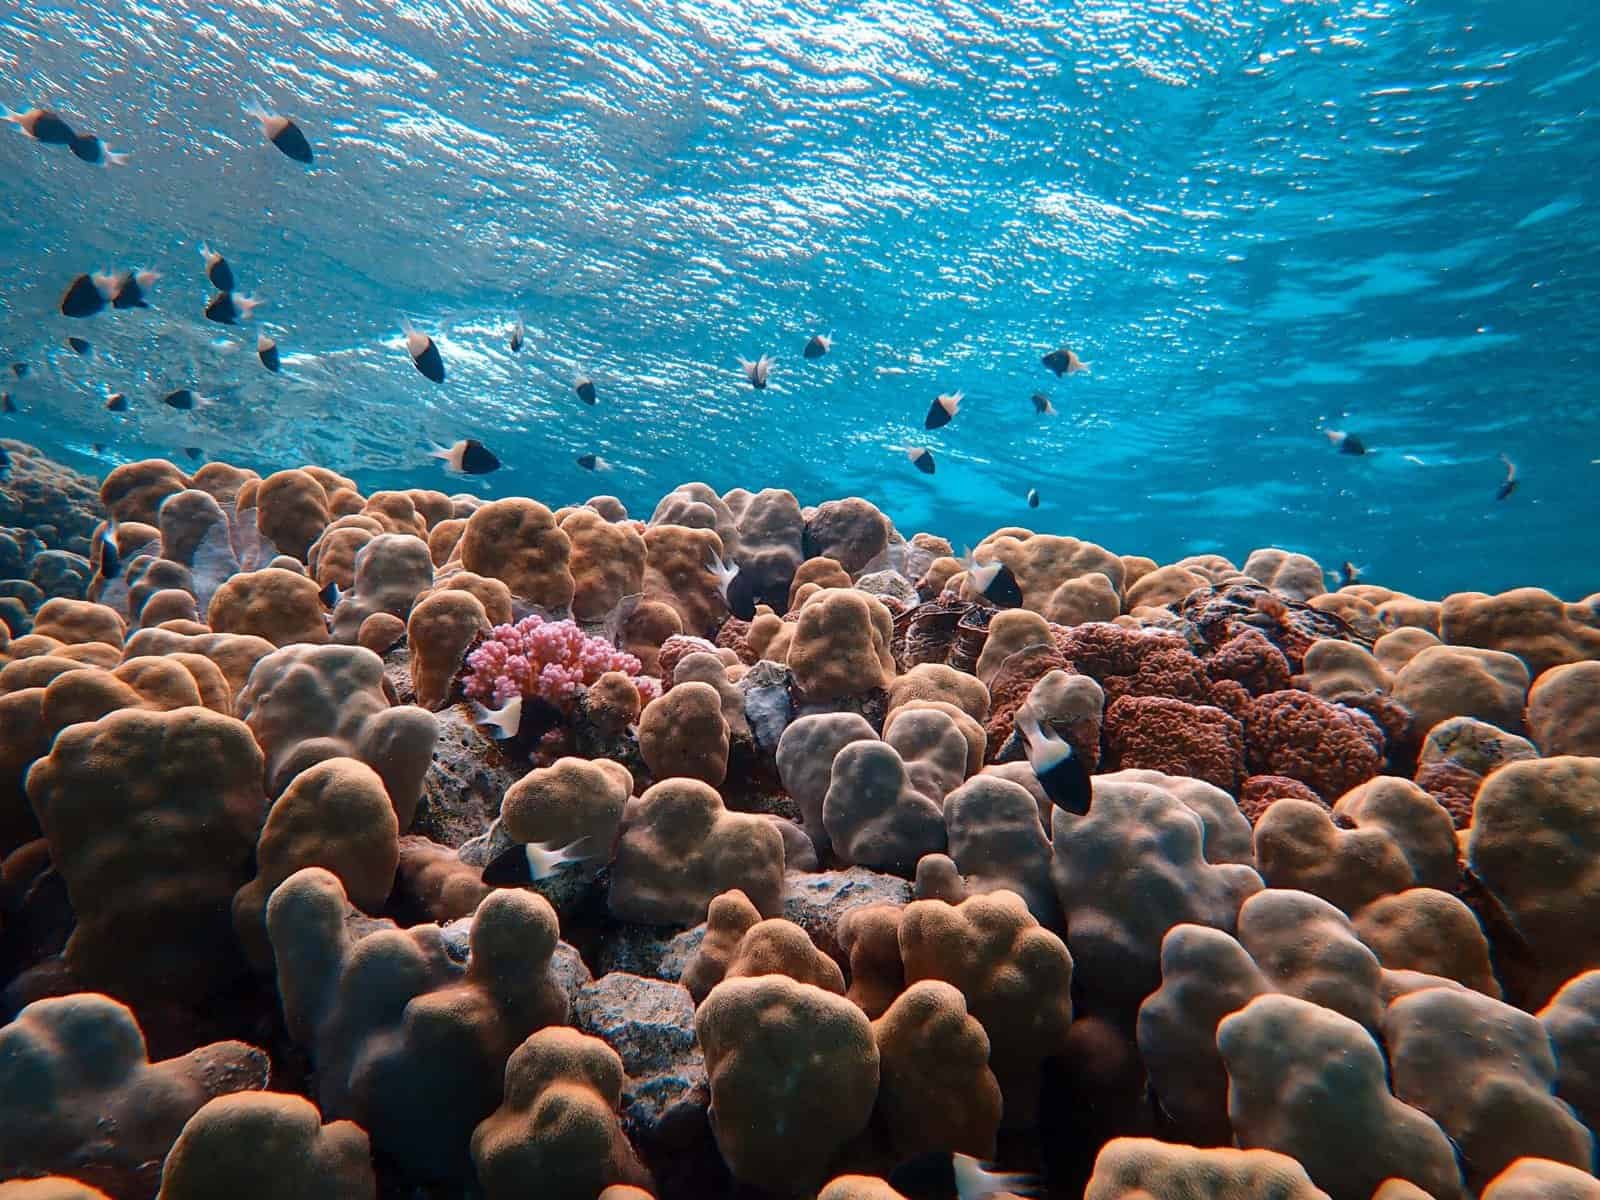 Underwater sea view of marine life in Great Barrier Reef